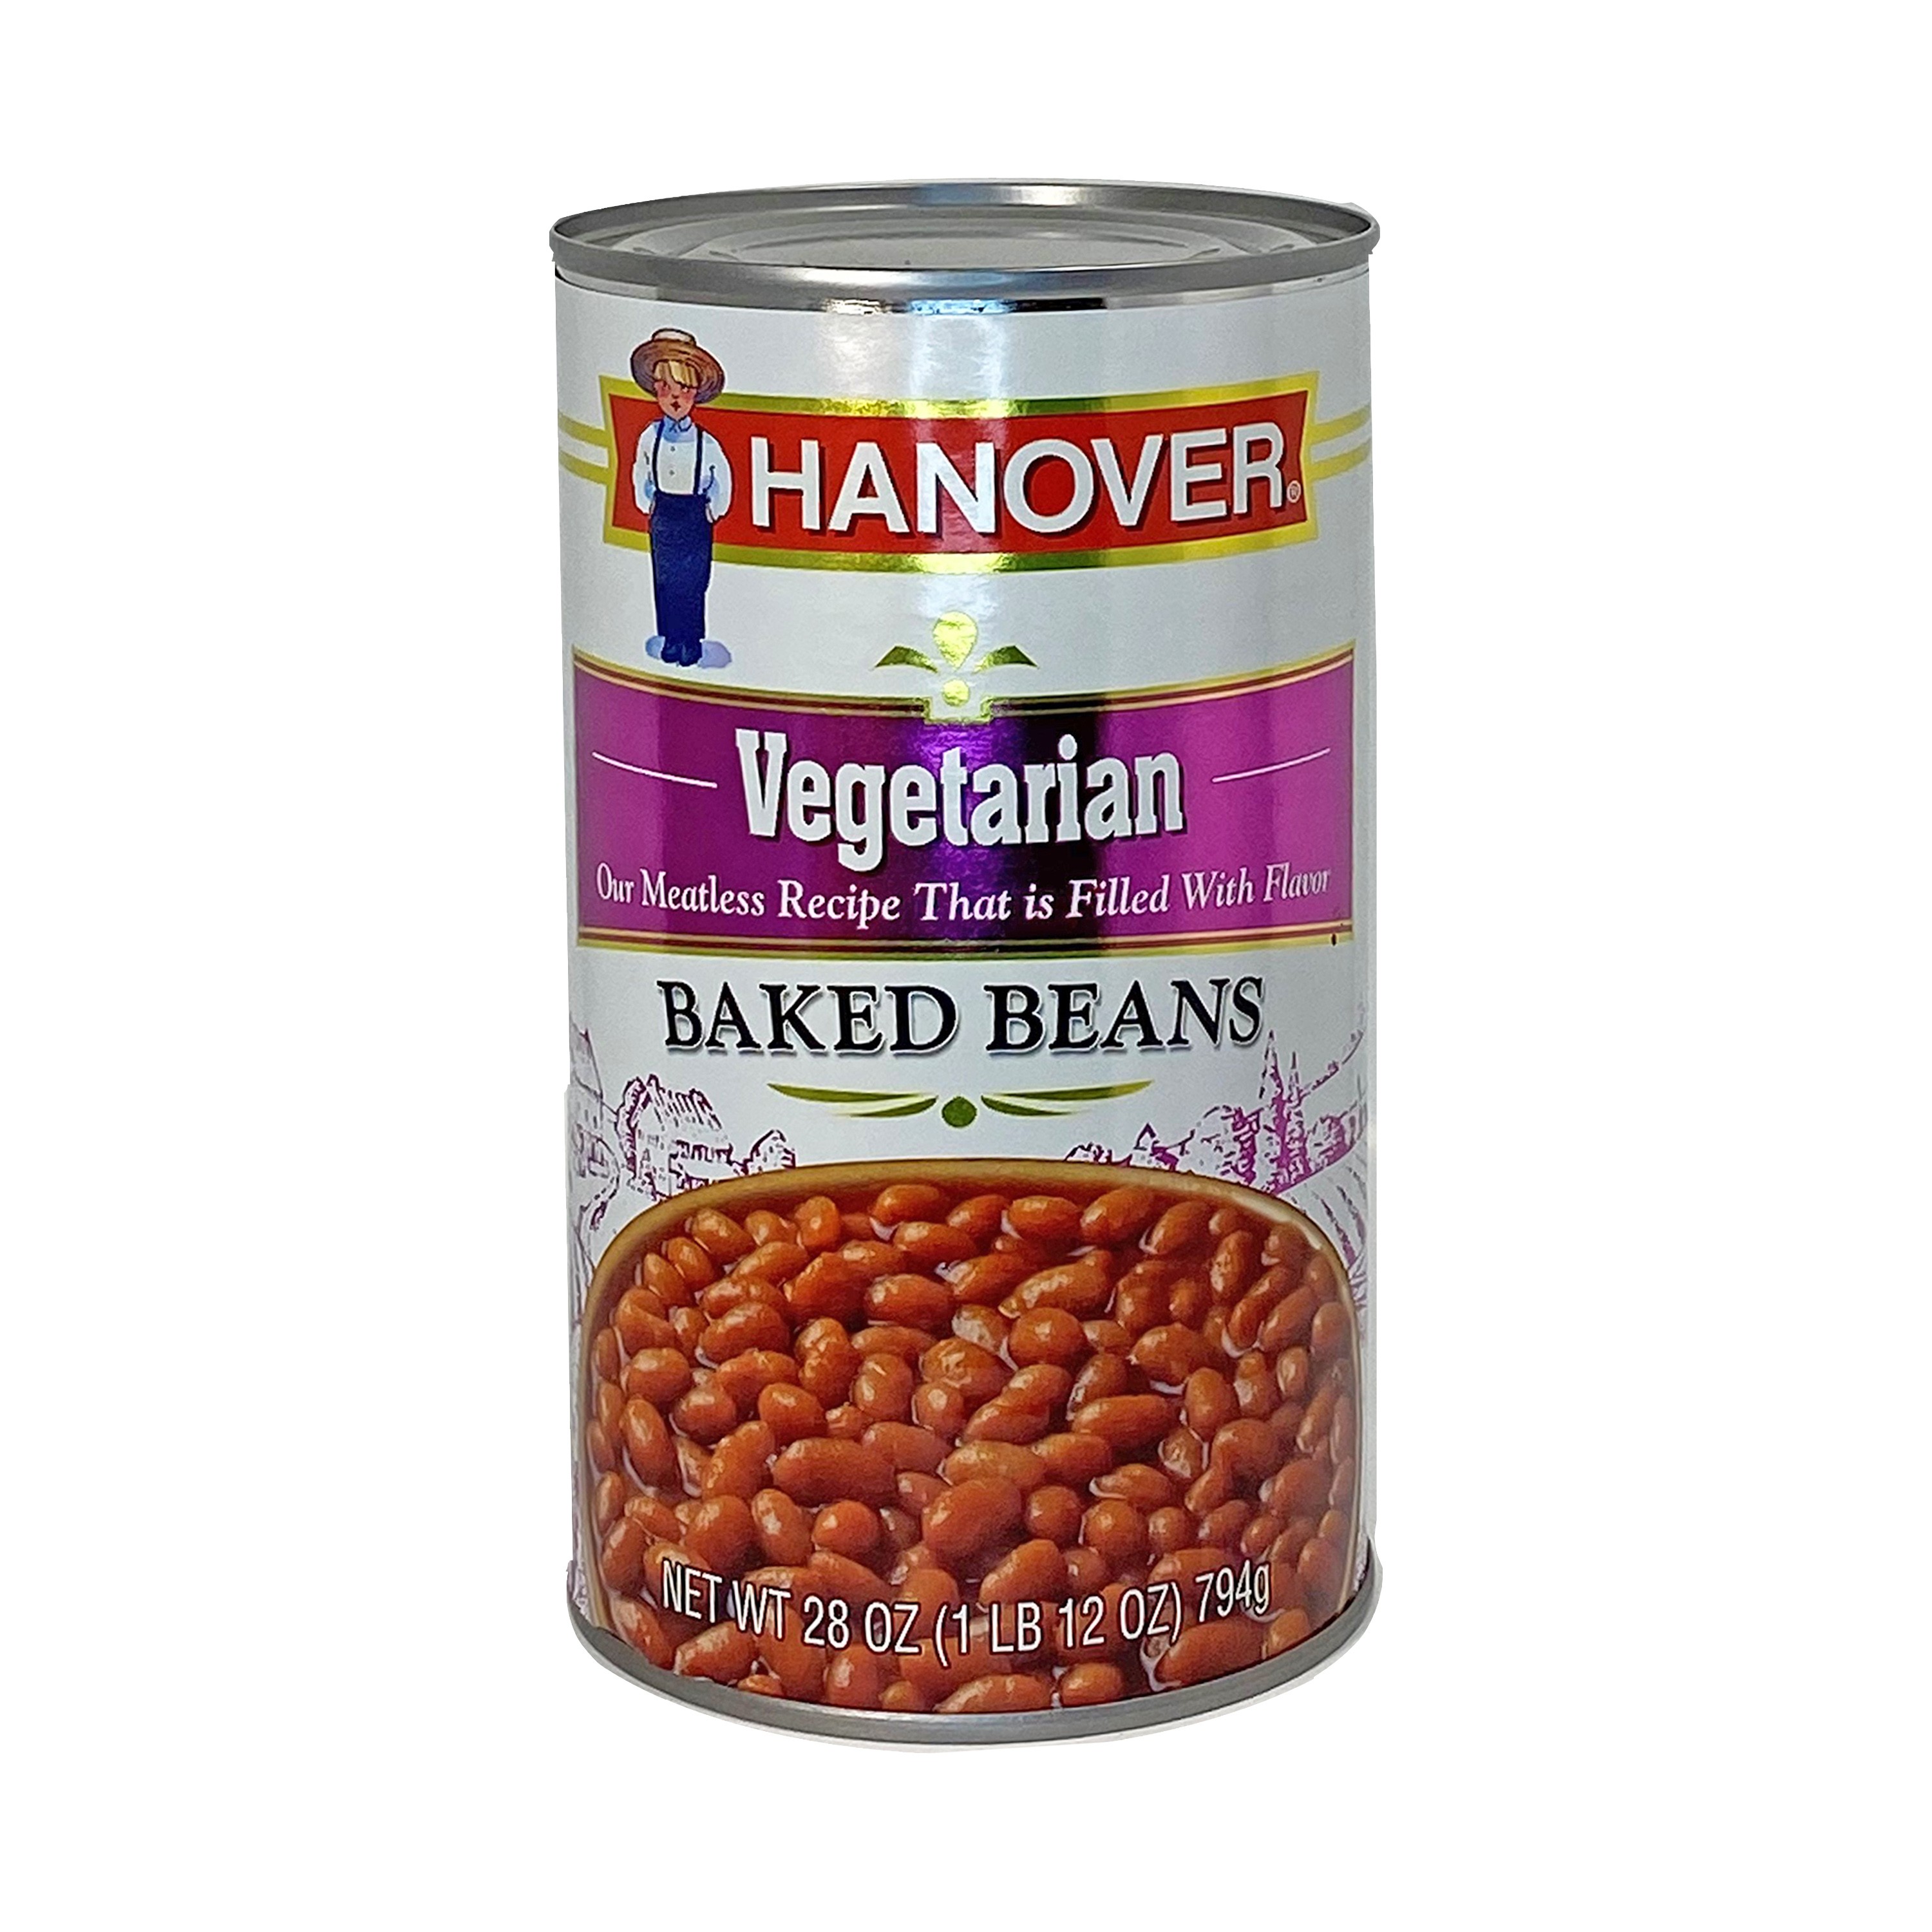 Hanover Baked Beans Vegetarian | Hanover Foods